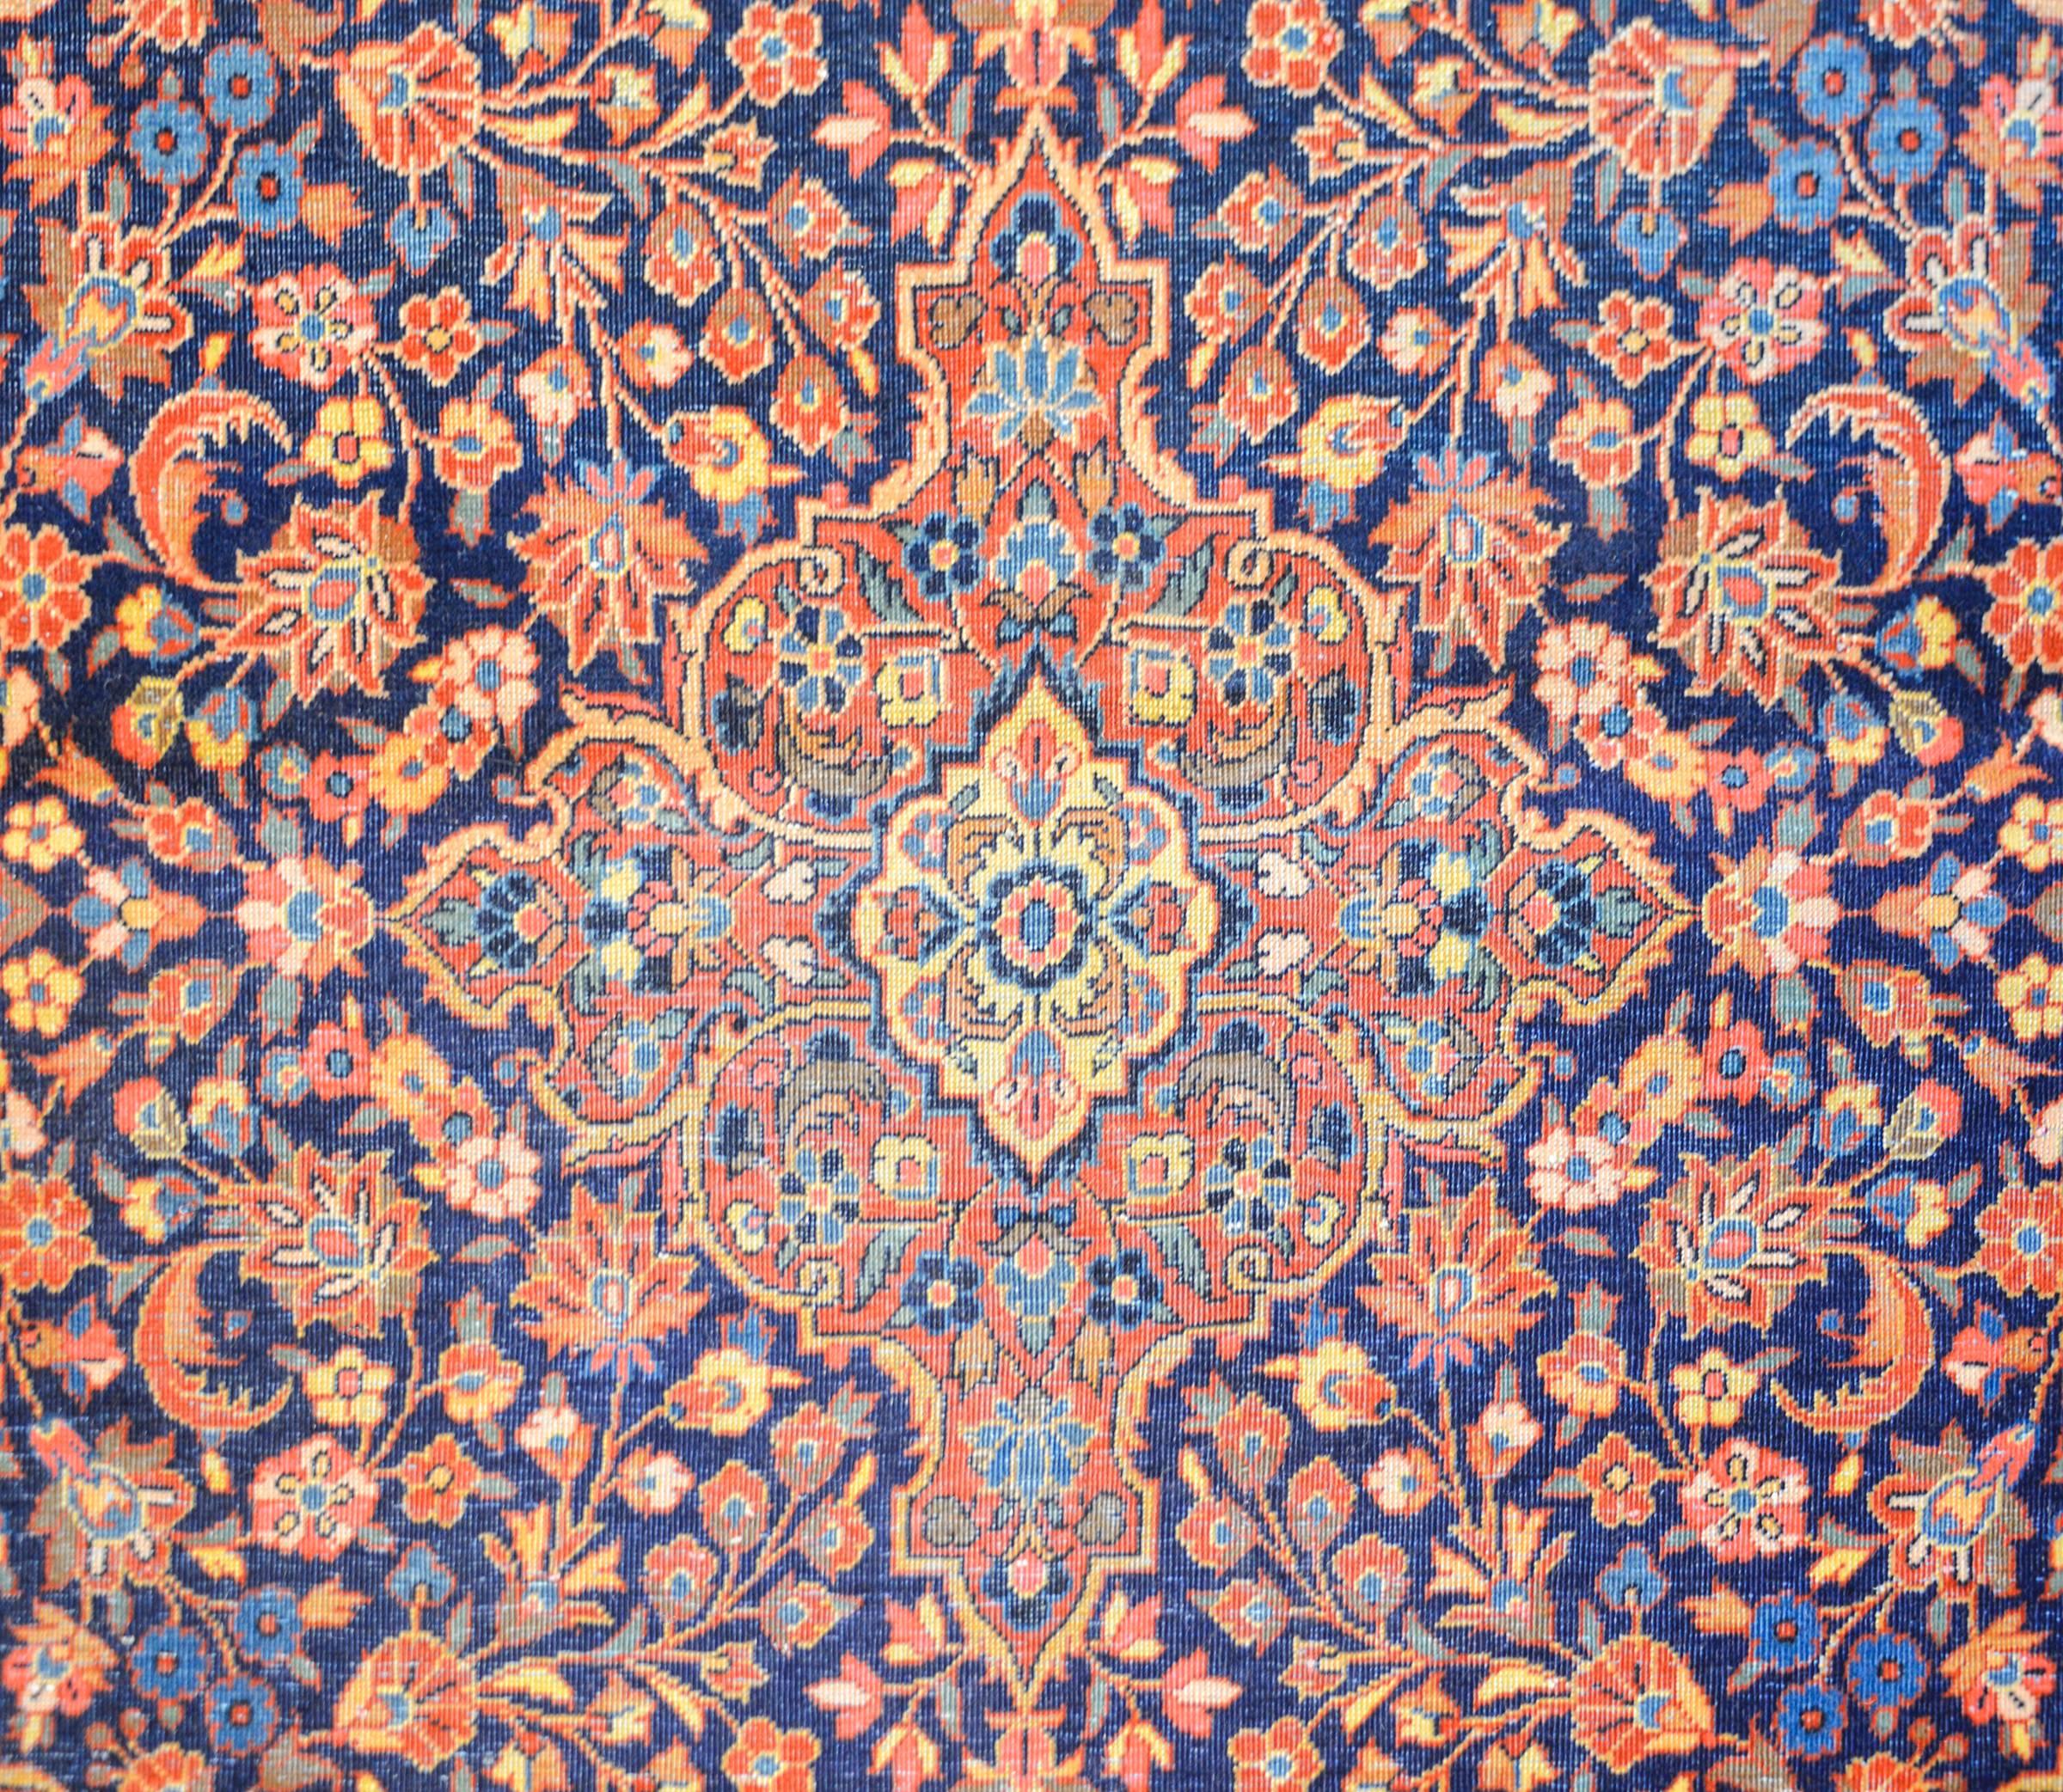 Ein unglaublicher persischer Kaschan-Teppich aus dem frühen 20. Jahrhundert mit einem intensiven und dicht gewebten Allover-Muster aus großen und kleinen Blumen und Ranken in Karmesinrot, Indigo und natürlichen Wollfarben, alles auf einem dunklen